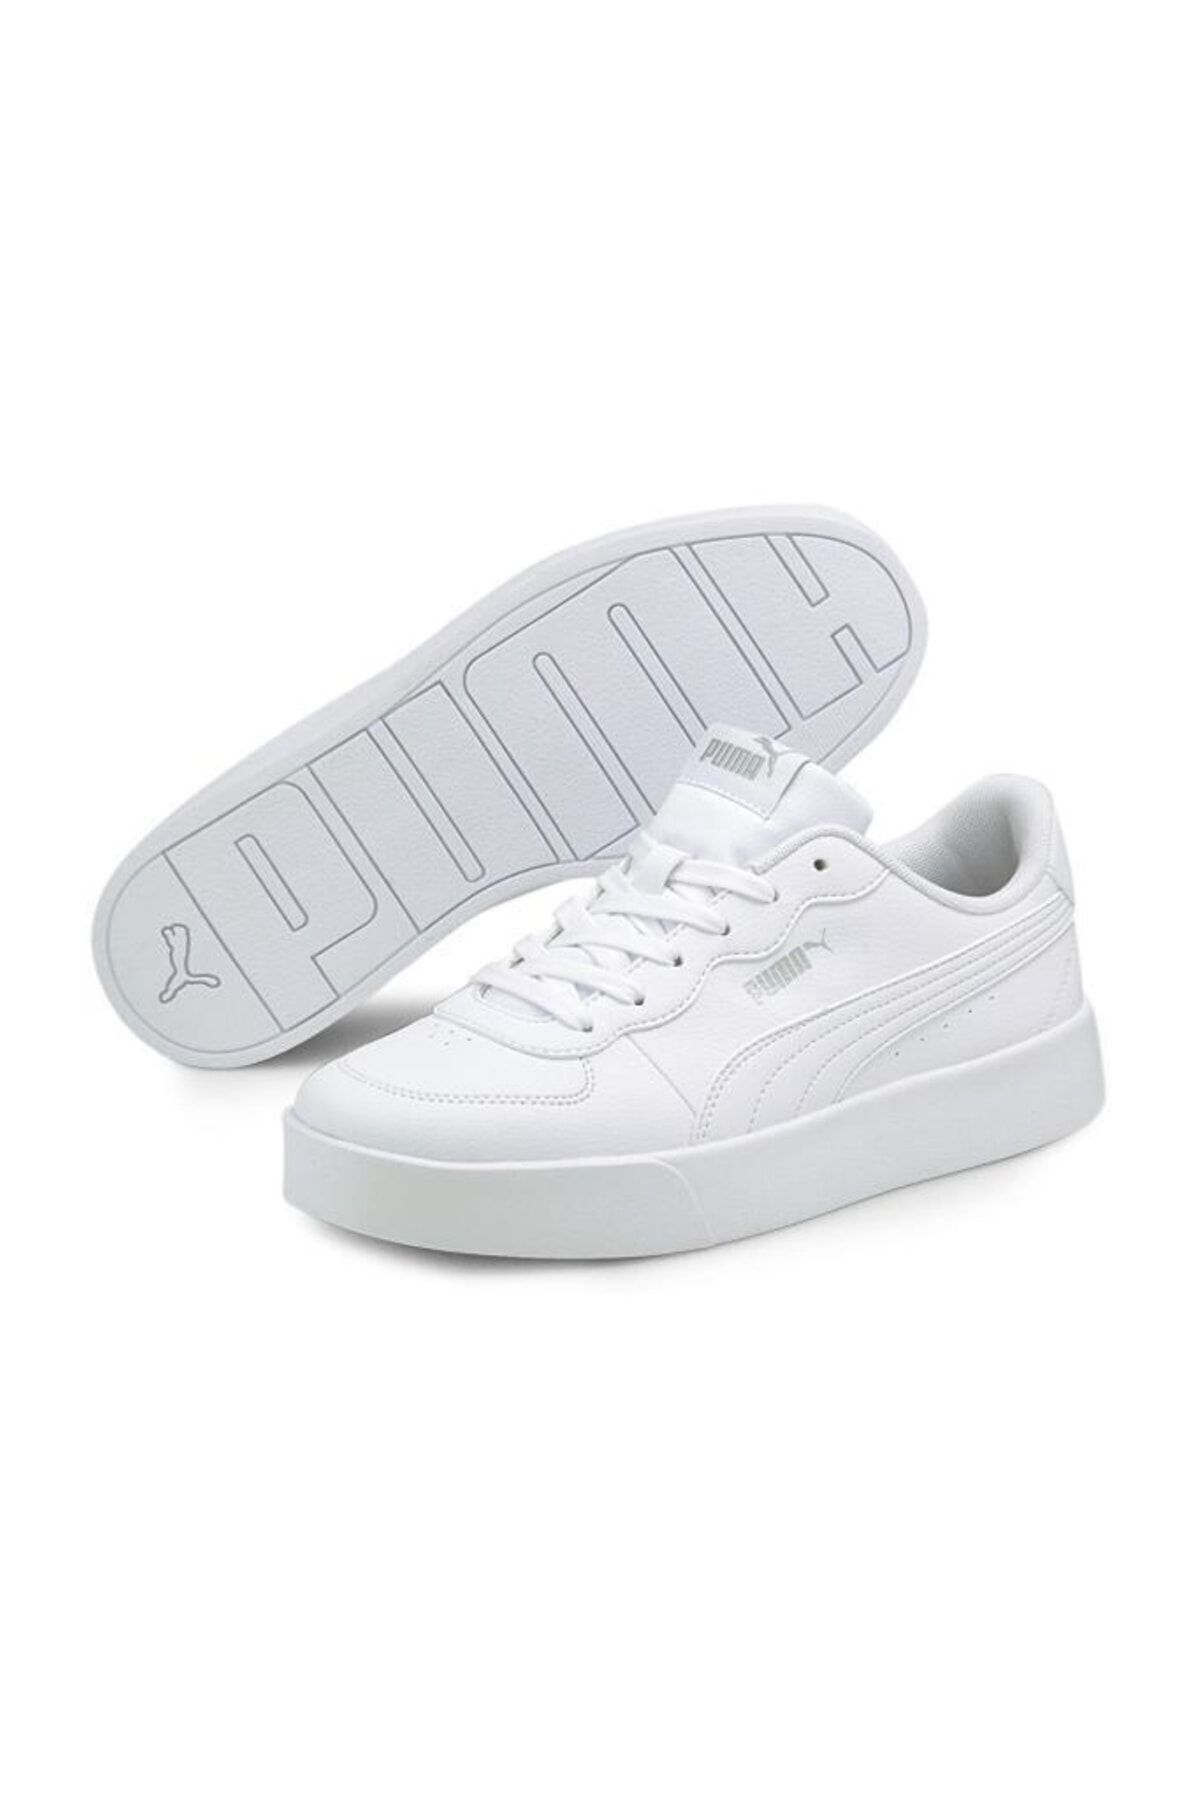 Puma Skye Clean Beyaz Kadın Sneaker Ayakkabı 38014702